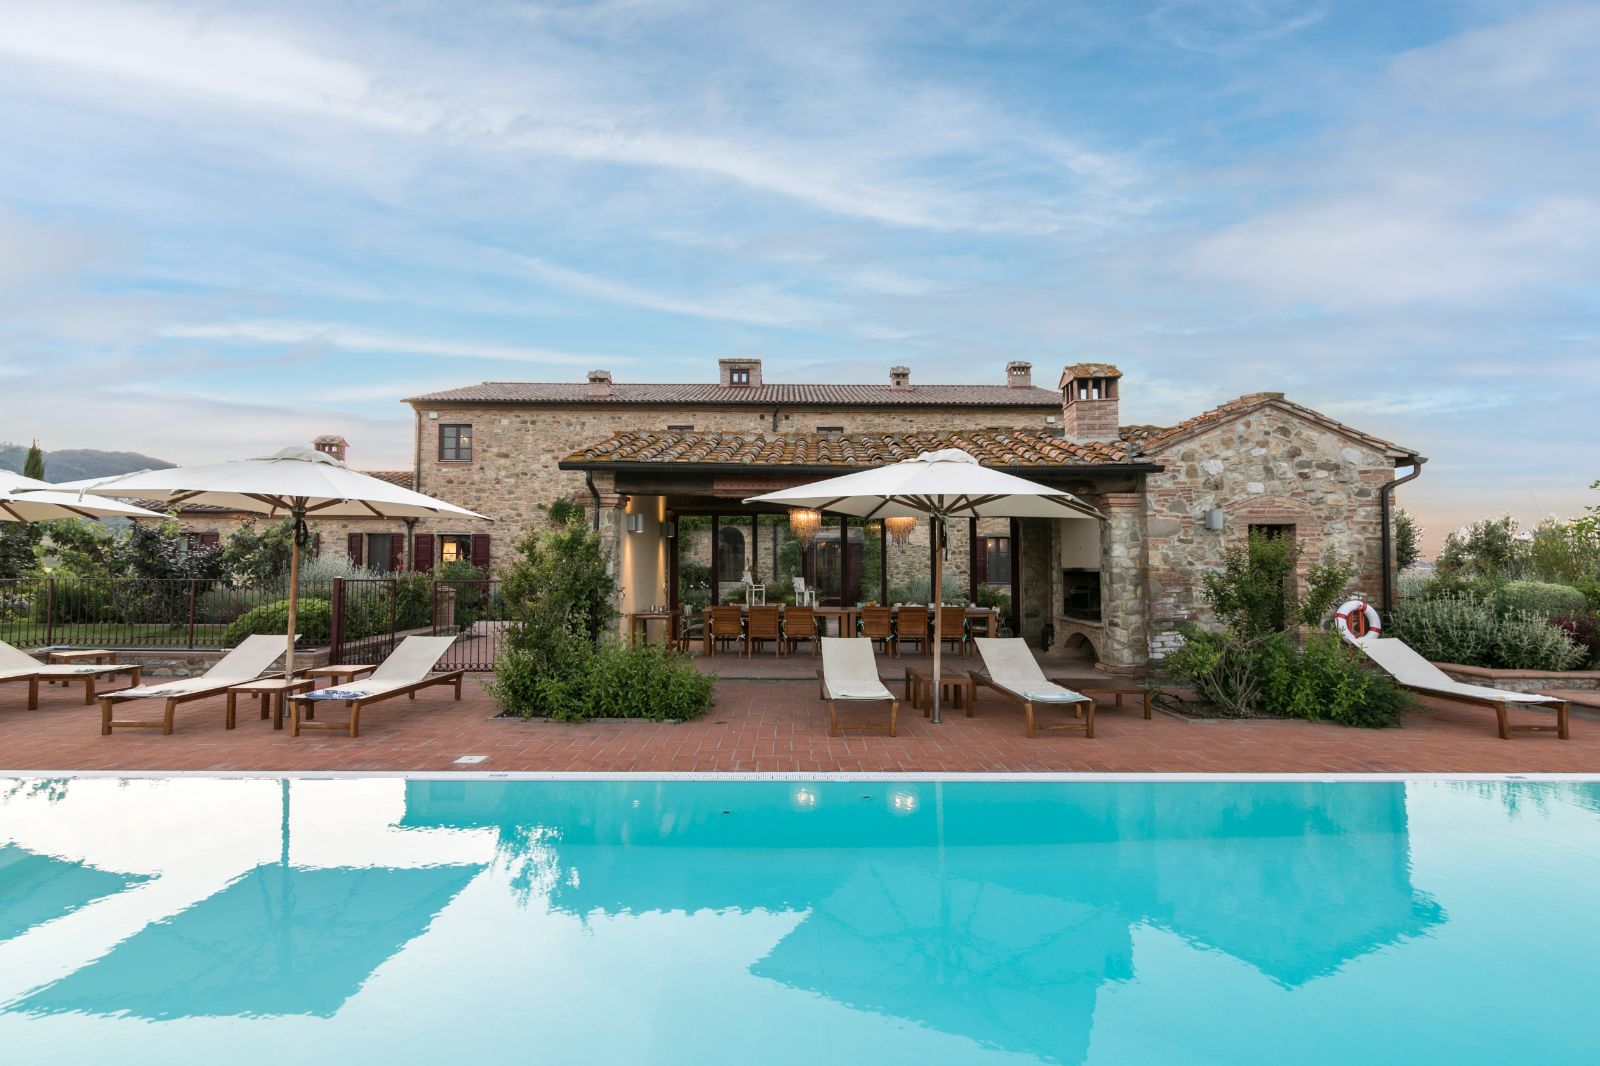 Pool at Villa Papavero in Tuscany